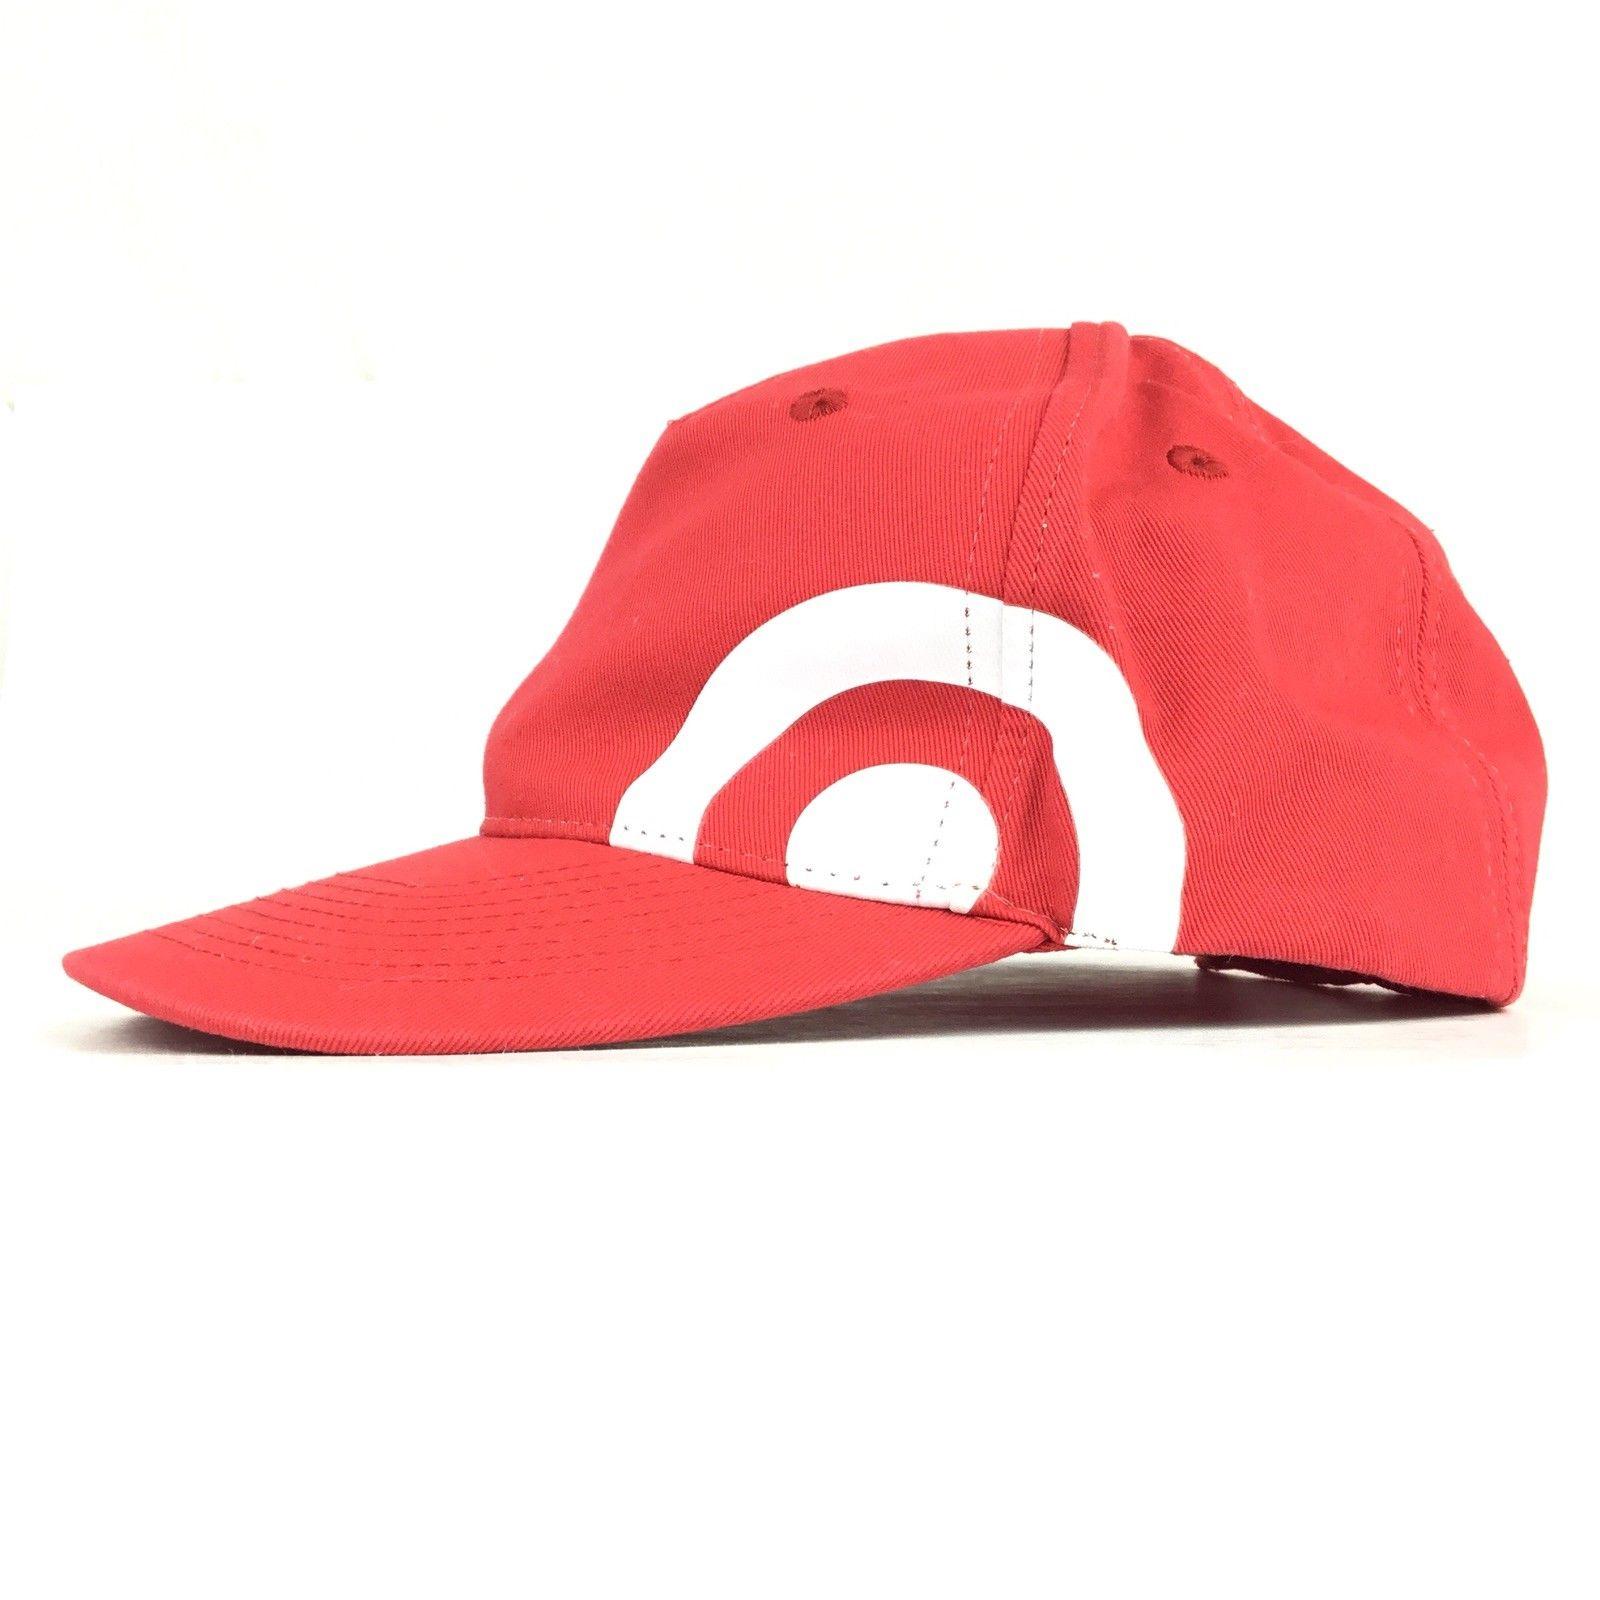 Red Bullseye Logo - TARGET Store Bullseye Logo Red Baseball Size Cap Hat Adj Men's Size ...